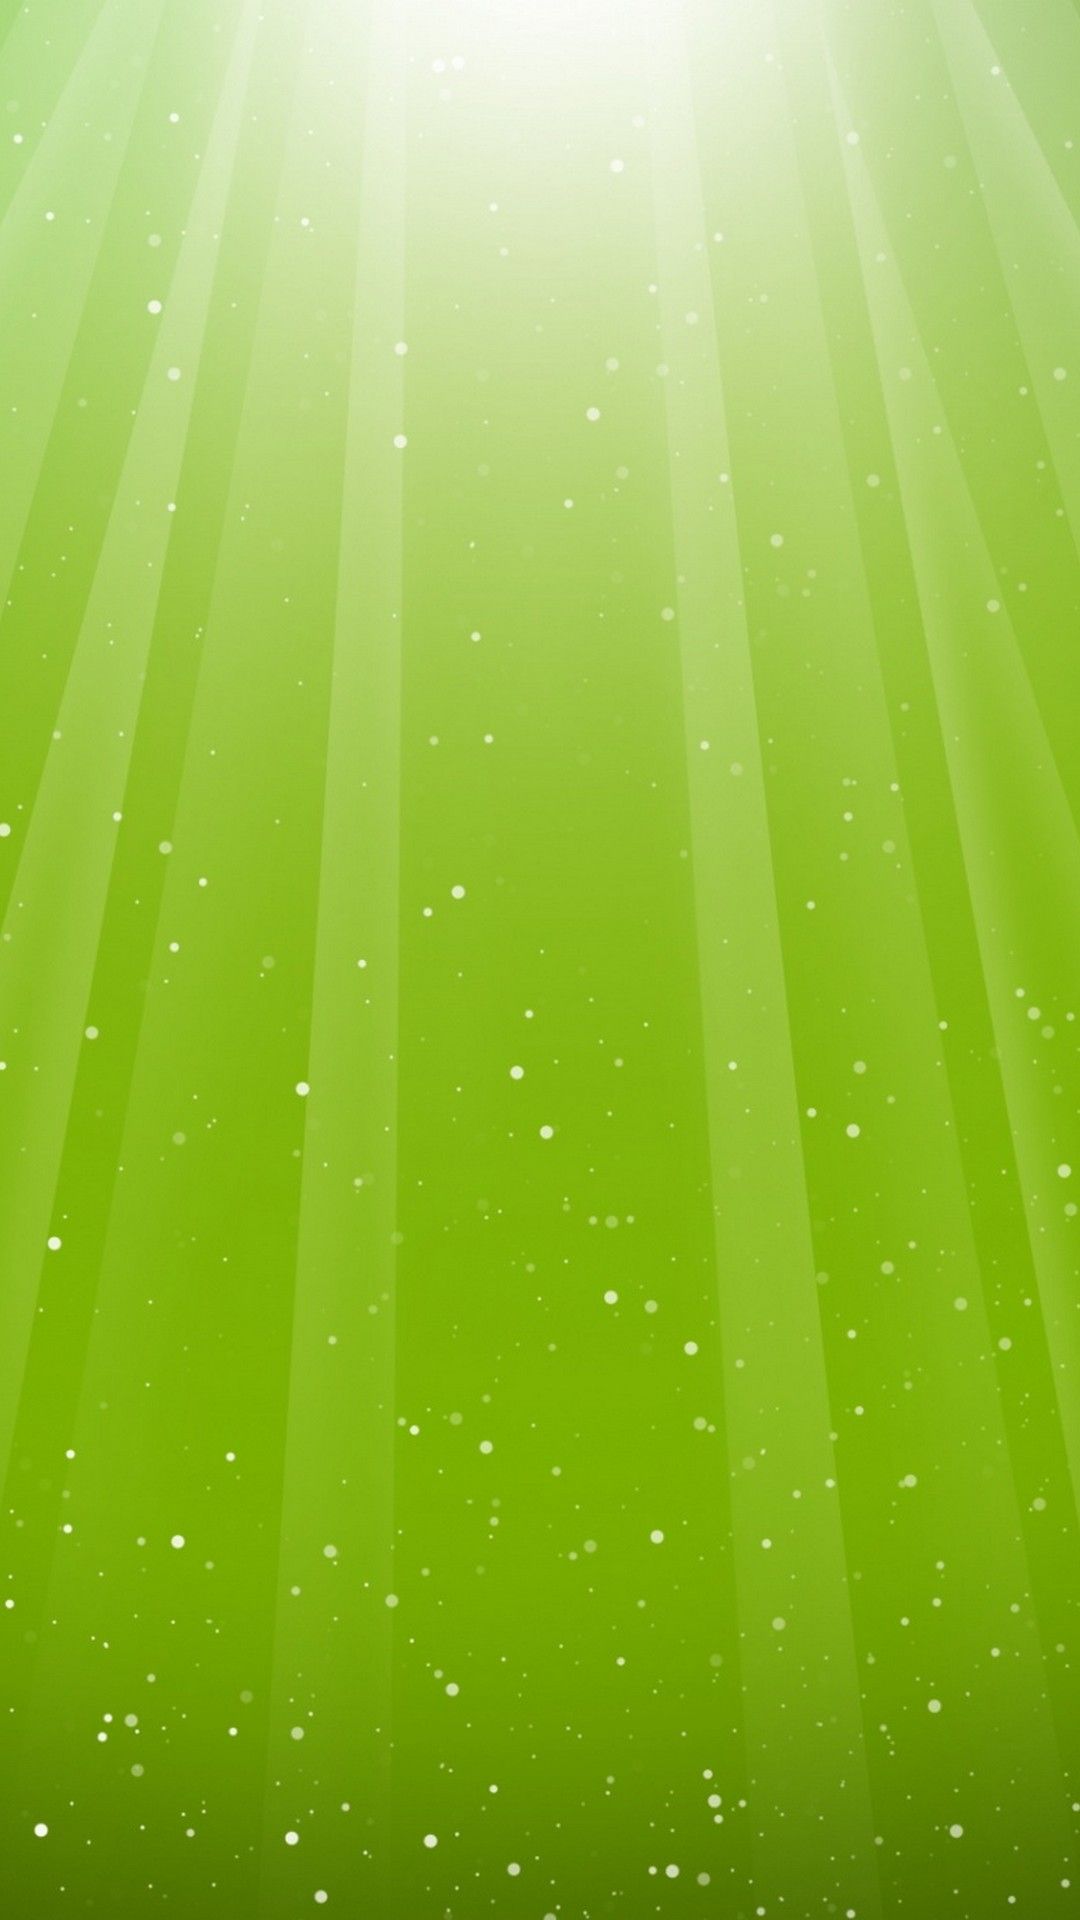 Light Green iPhone Wallpaper 3D iPhone Wallpaper